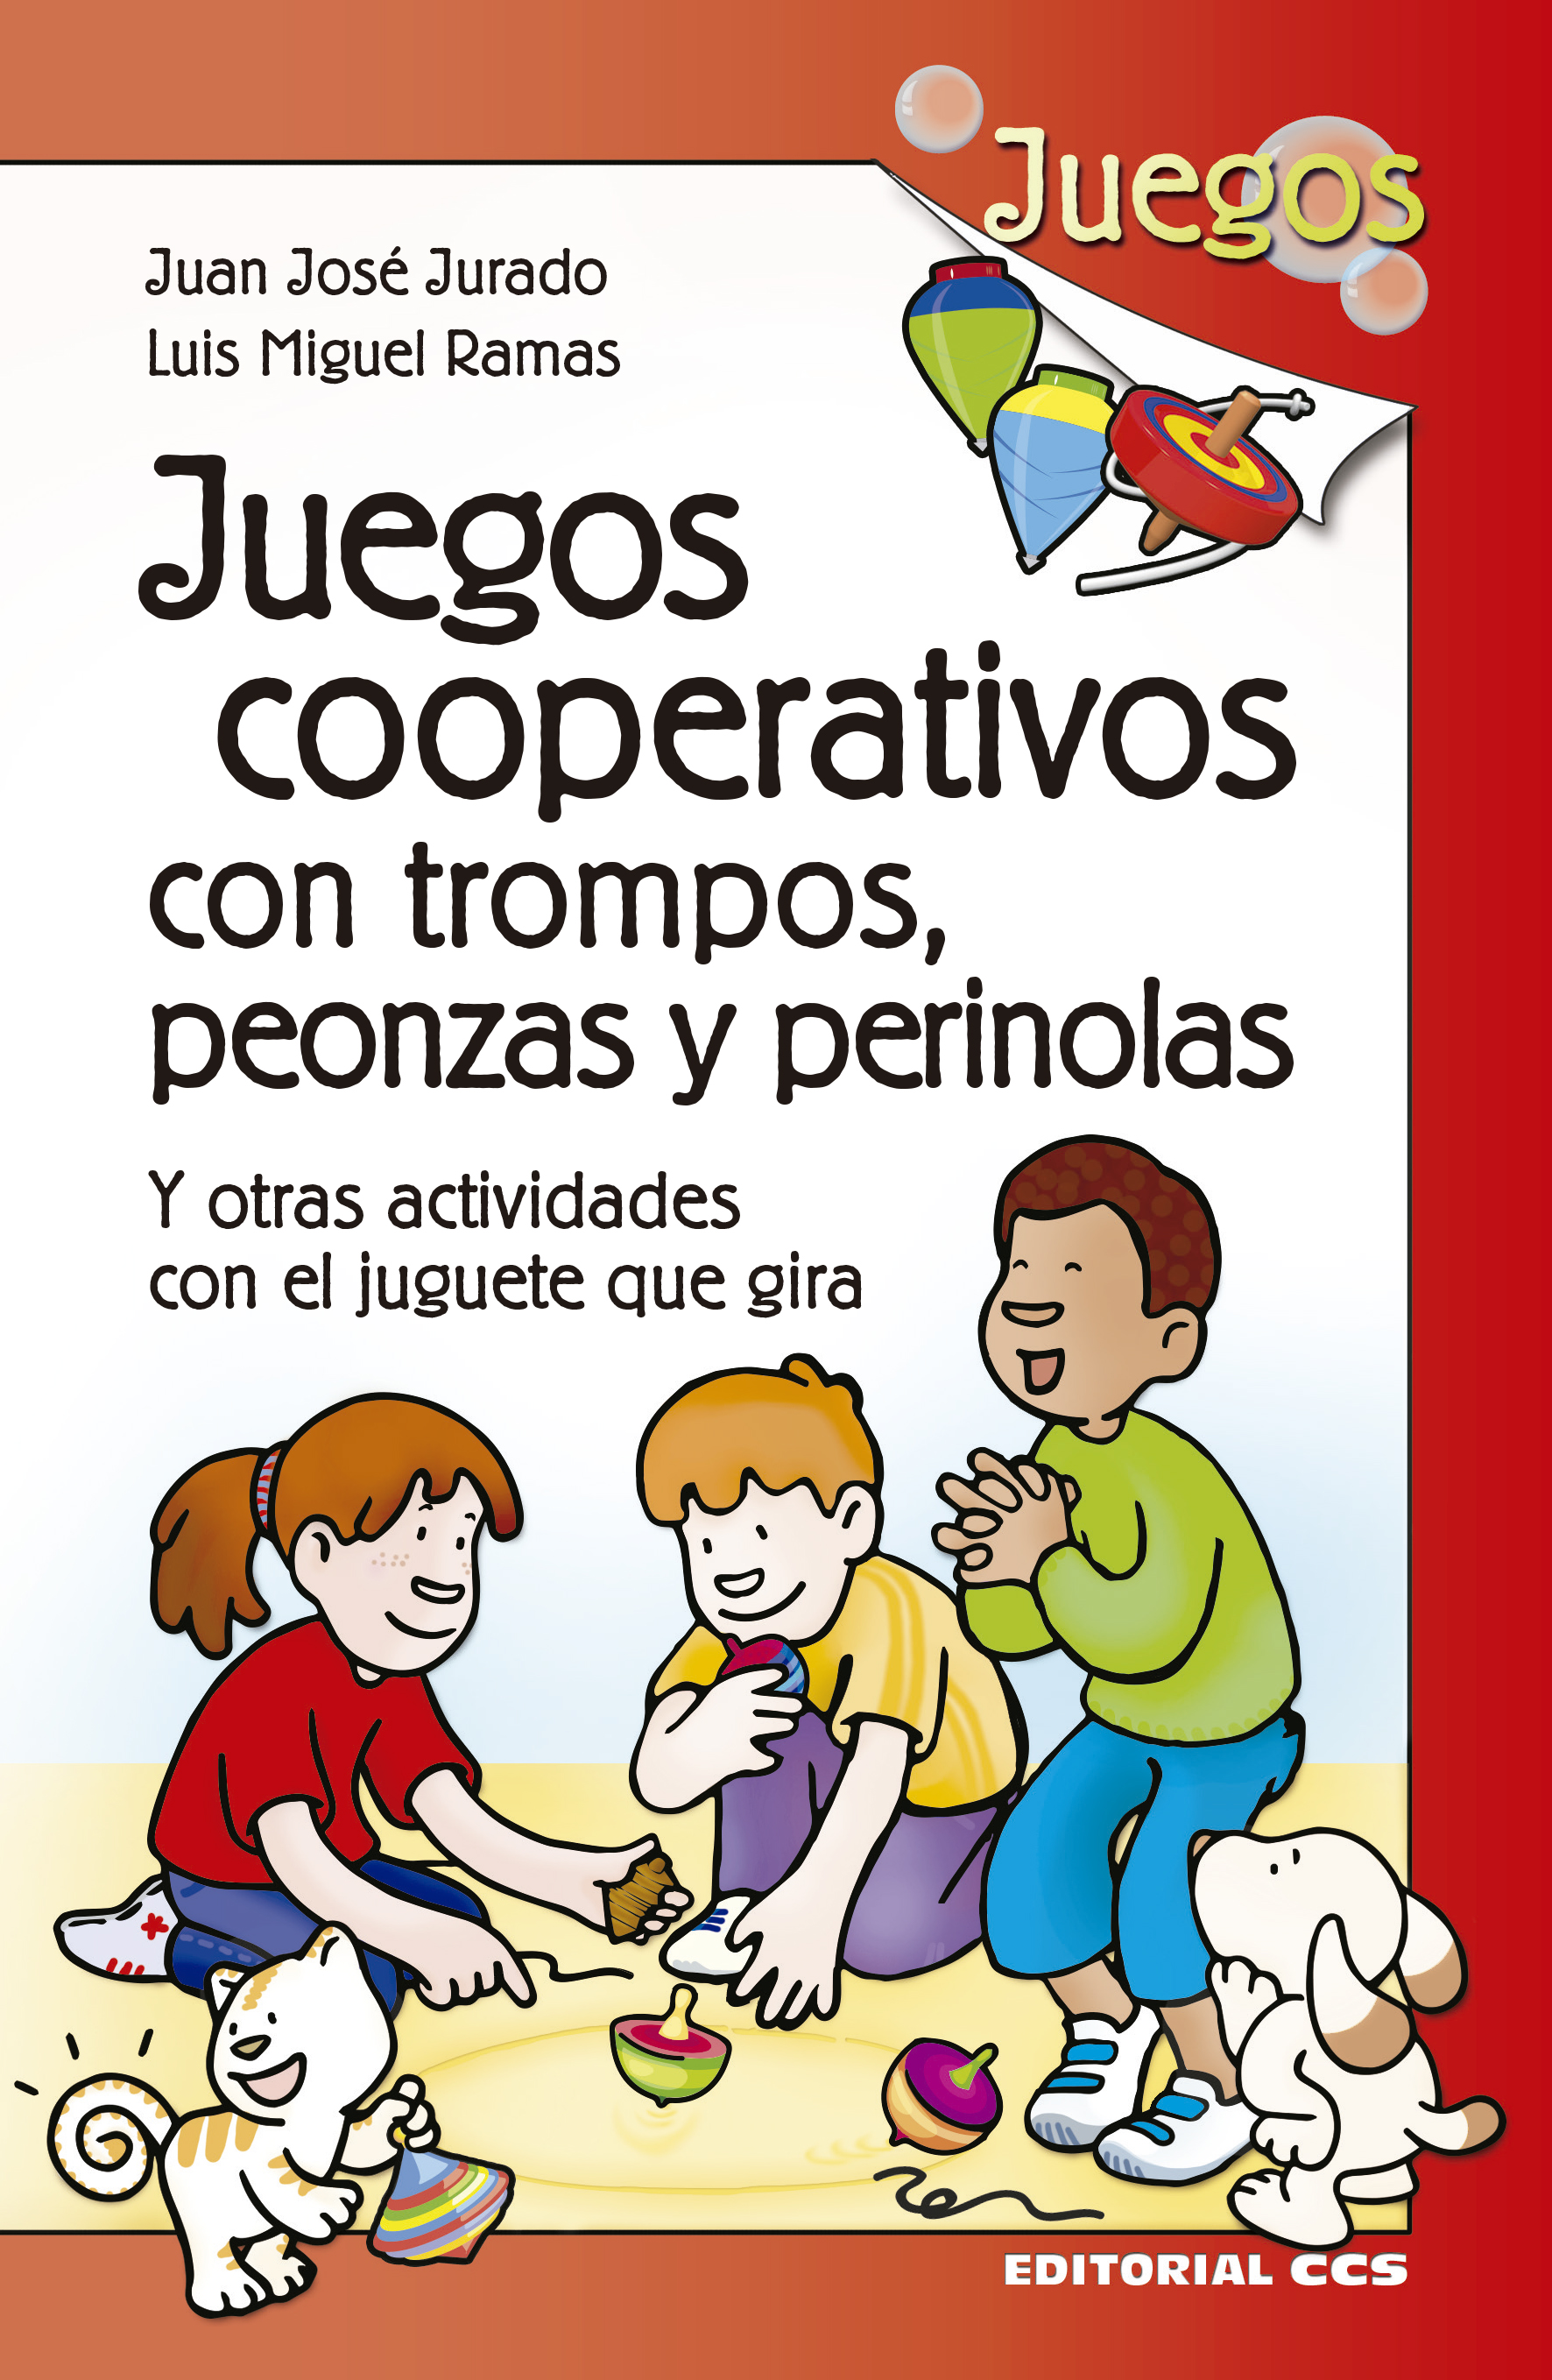 Editorial CCS - Libro: JUEGOS COOPERATIVOS CON TROMPOS, PEONZAS Y PERINOLAS